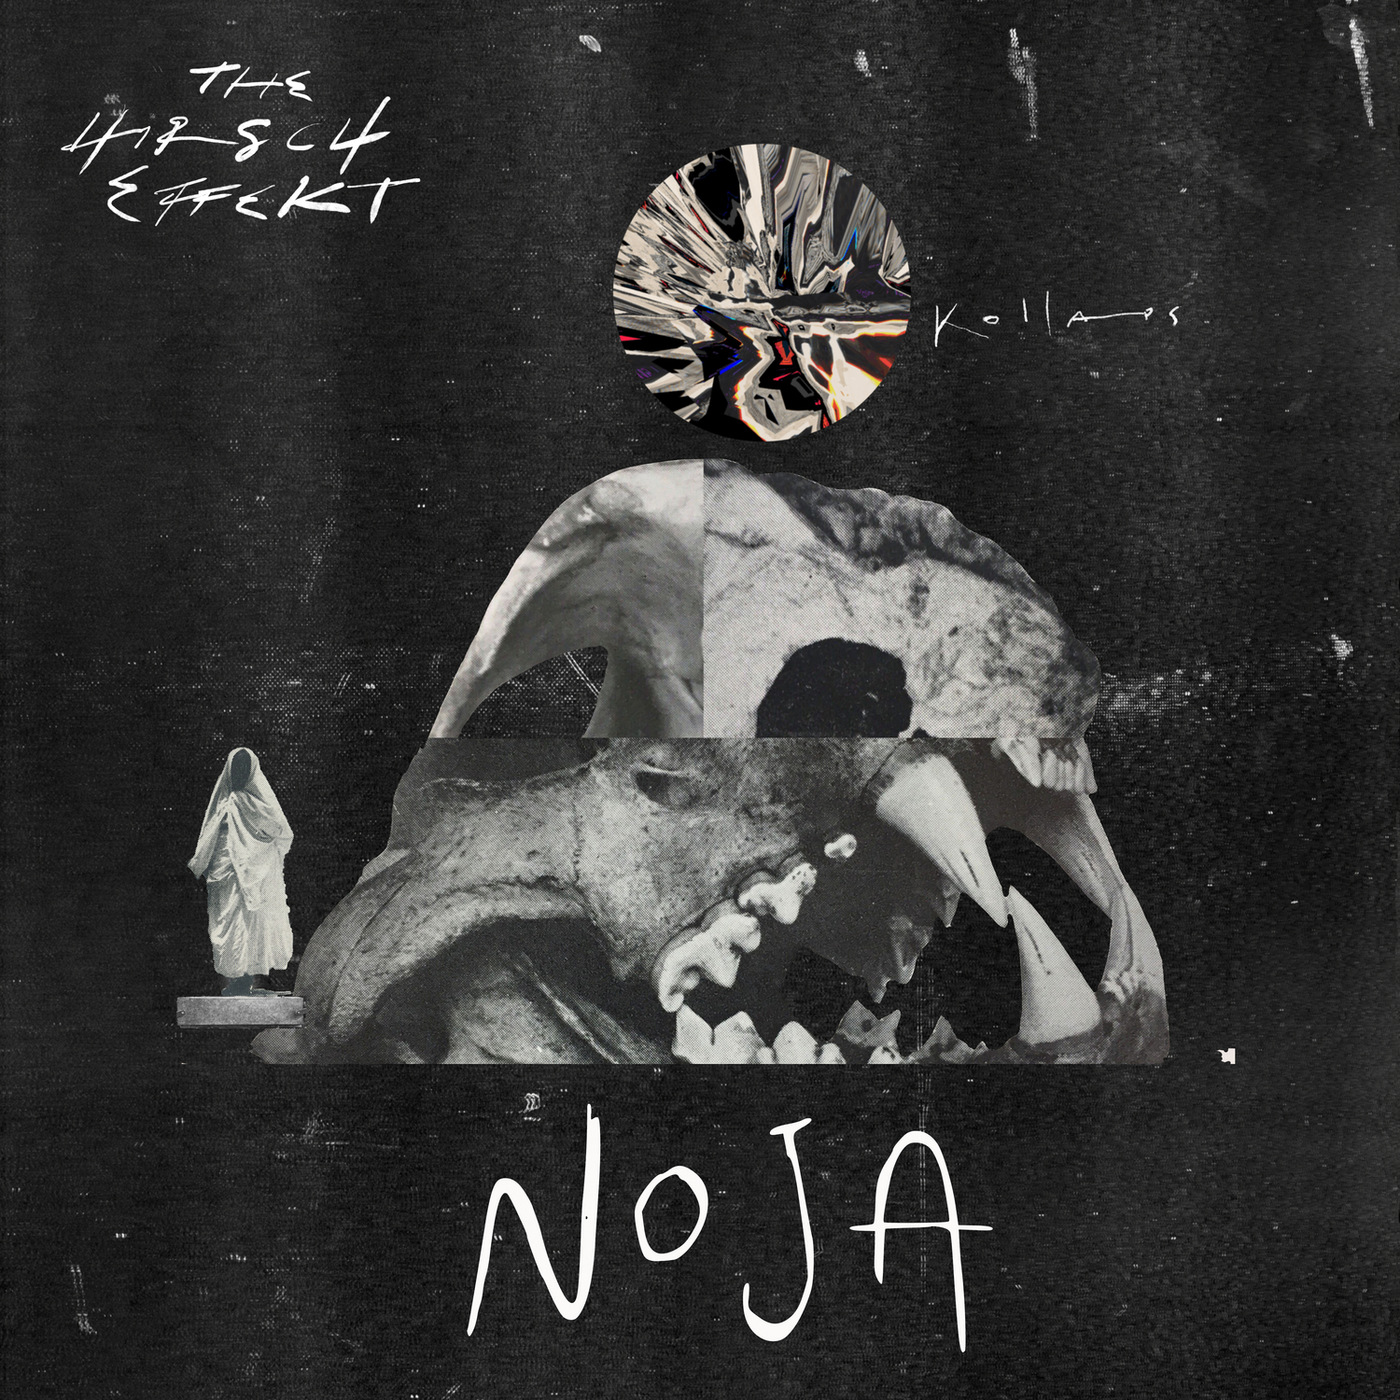 THE HIRSCH EFFEKT - Noja cover 